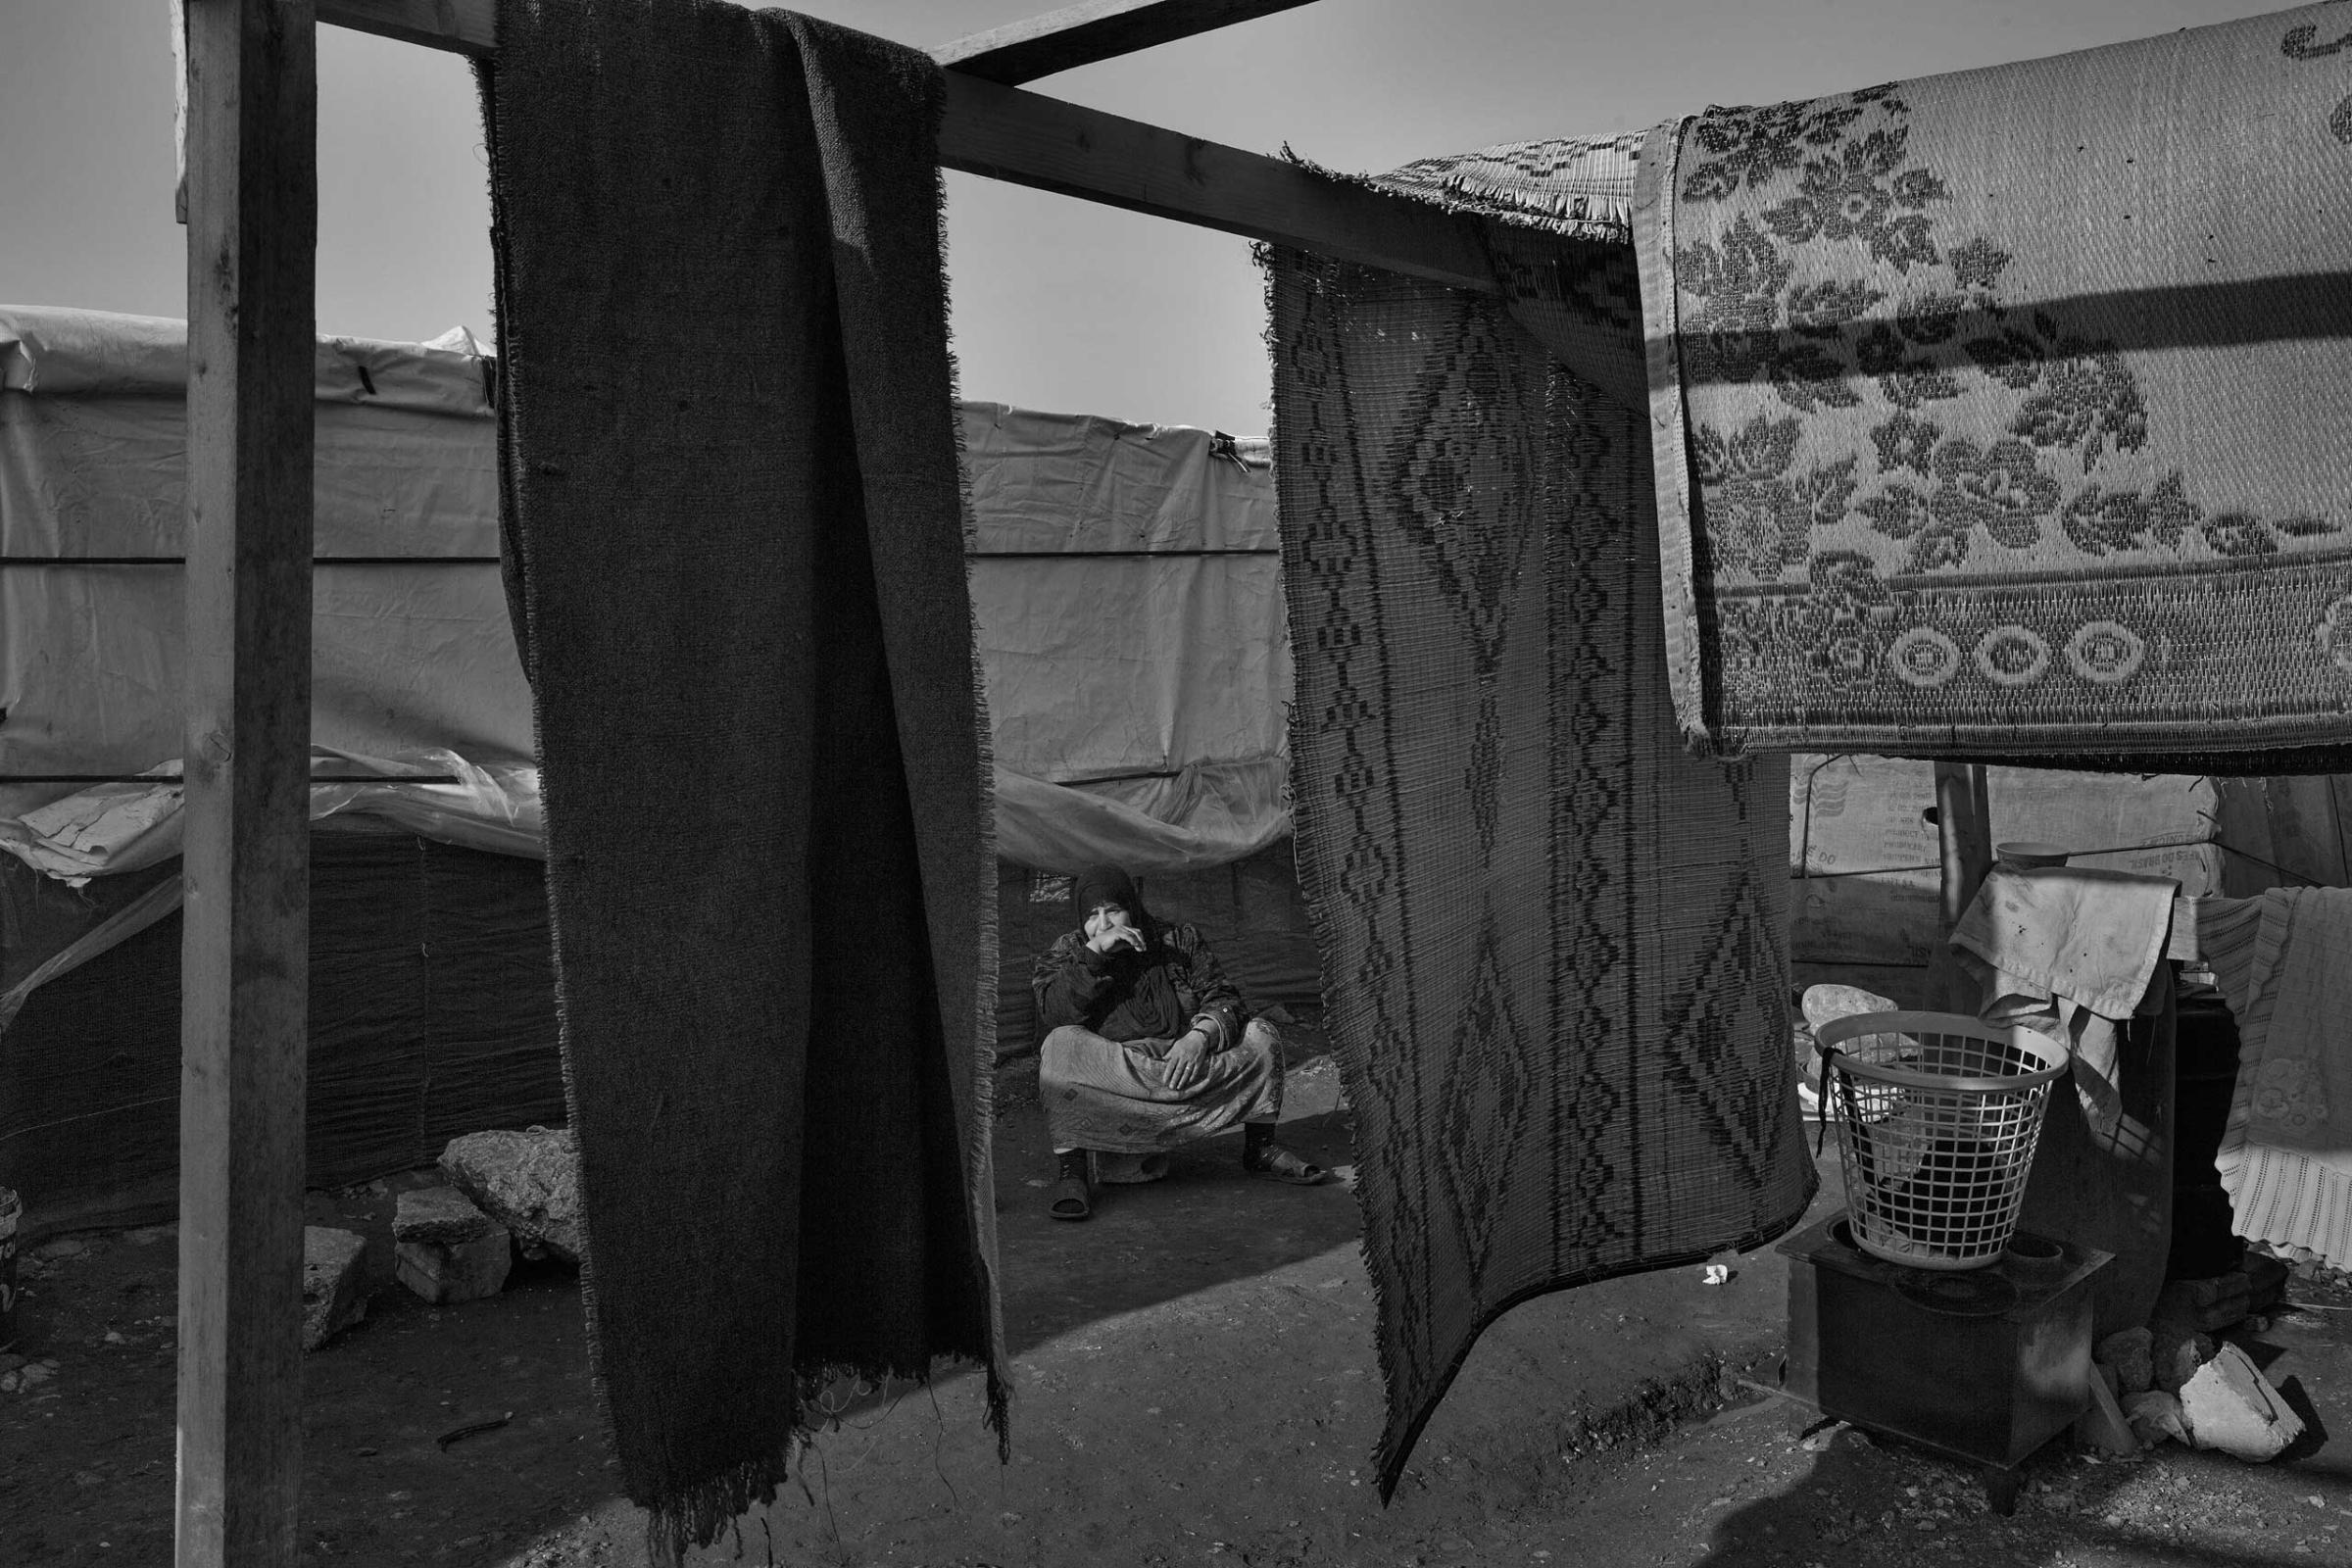 January 2014. Tripoli, Lebanon. Syrian refugees in Lebanon's informal settlements.